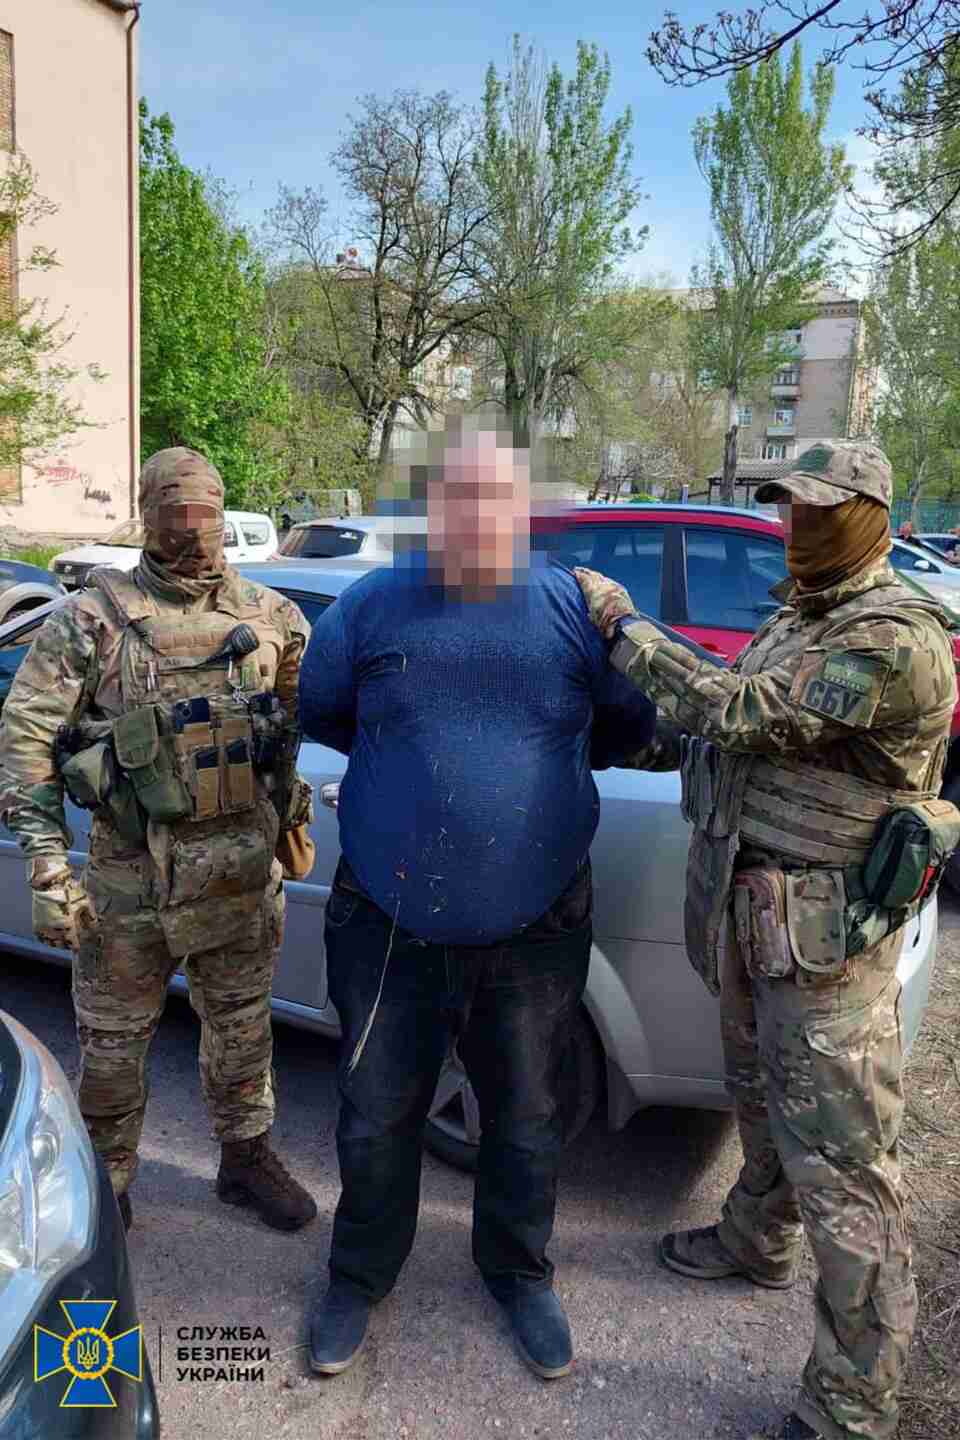 Особистий водій українського високопосадовця був задіяний у підготовці теракту проти командування ЗСУ - СБУ (ВІДЕО)